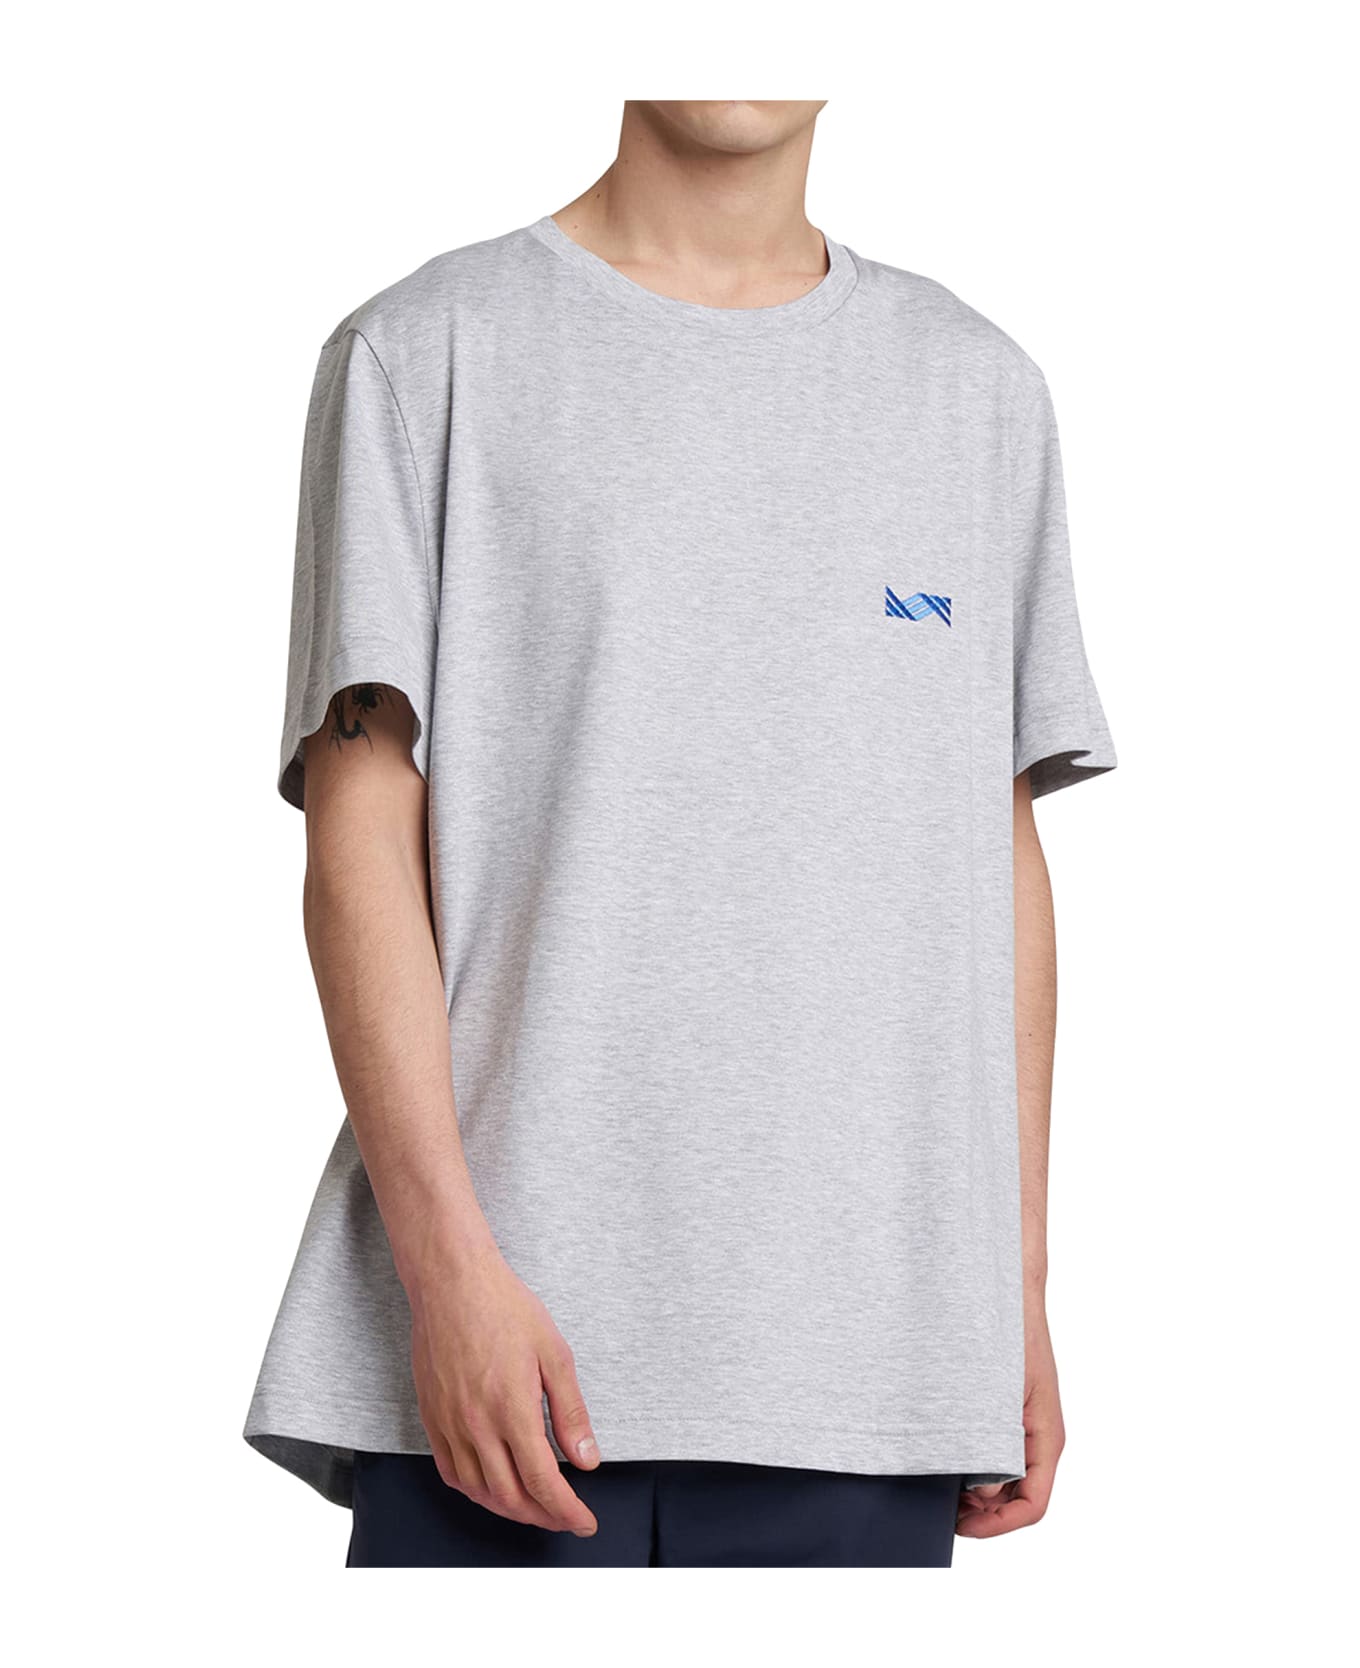 Kiton T-shirt Cotton - PEARL GREY